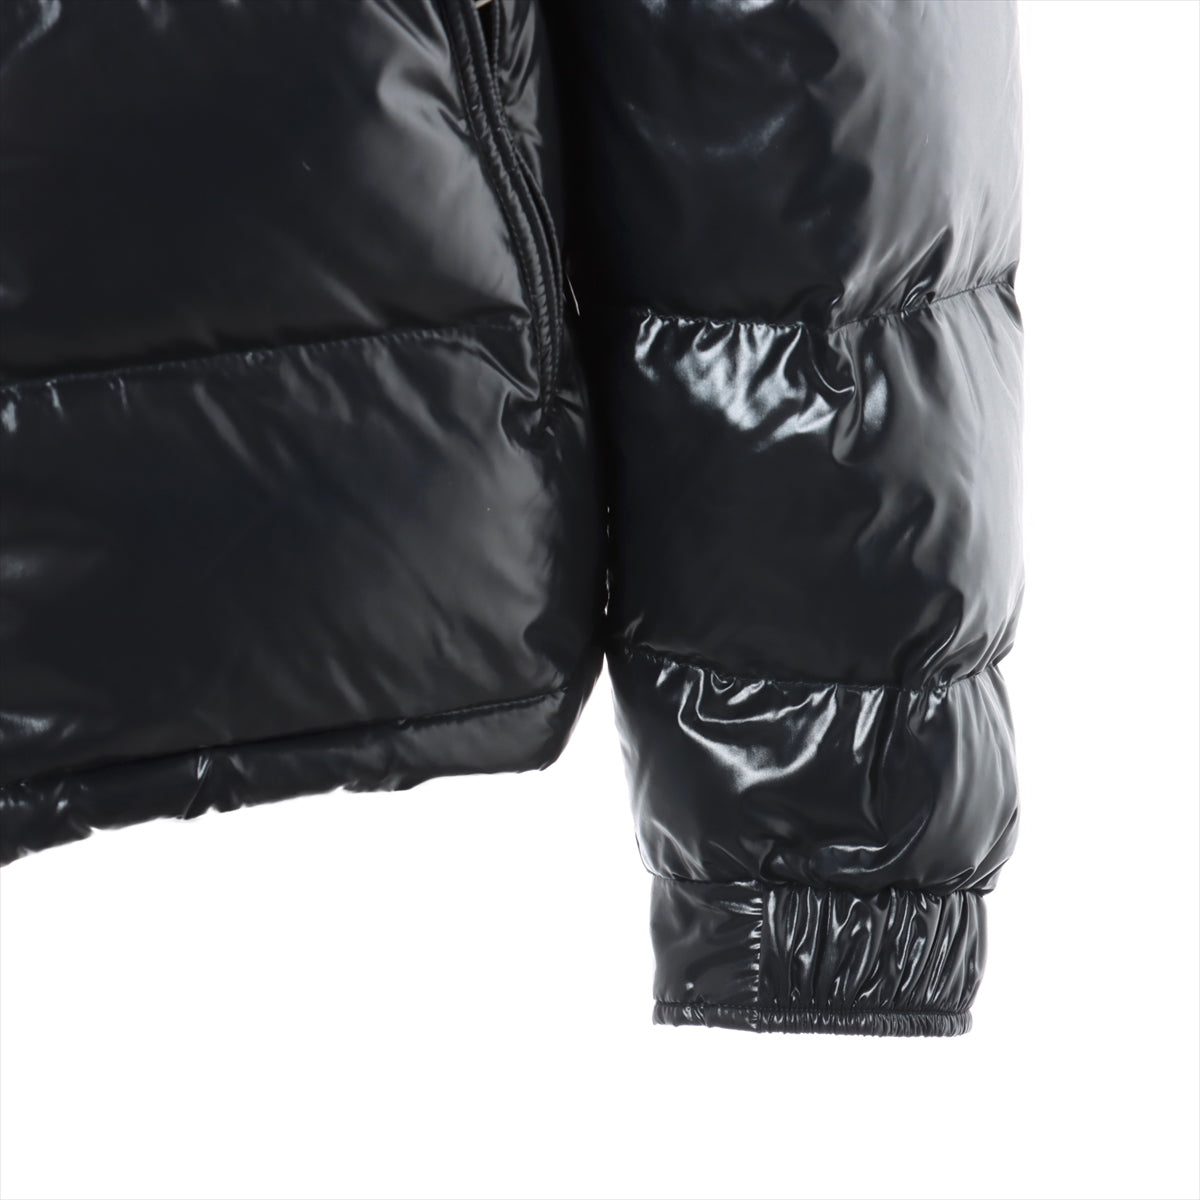 ヴァレンティノ ロックスタッズ ナイロン ダウンジャケット 46 メンズ ブラック  Untitled Down Jacket